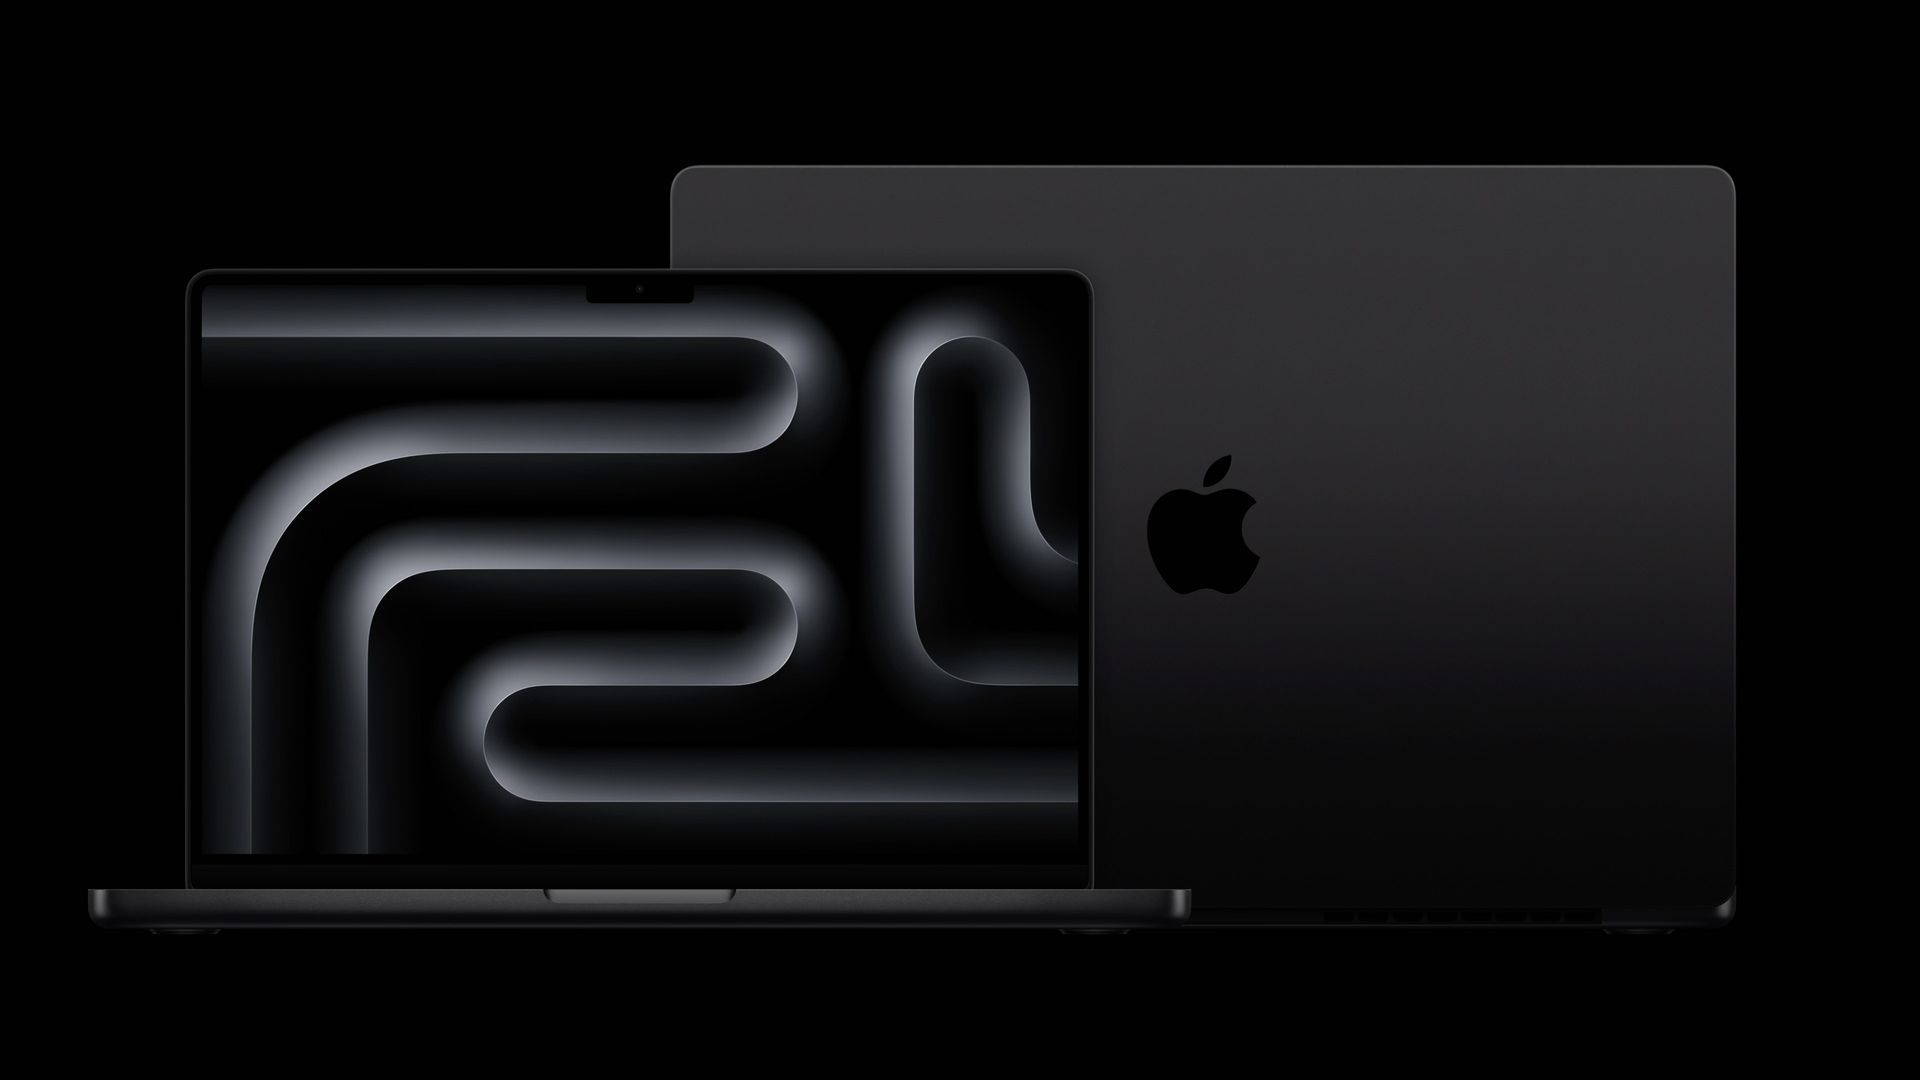 Podsumowanie wydarzenia Apple: MacBook Pro, chipy M3 i nowy iMac